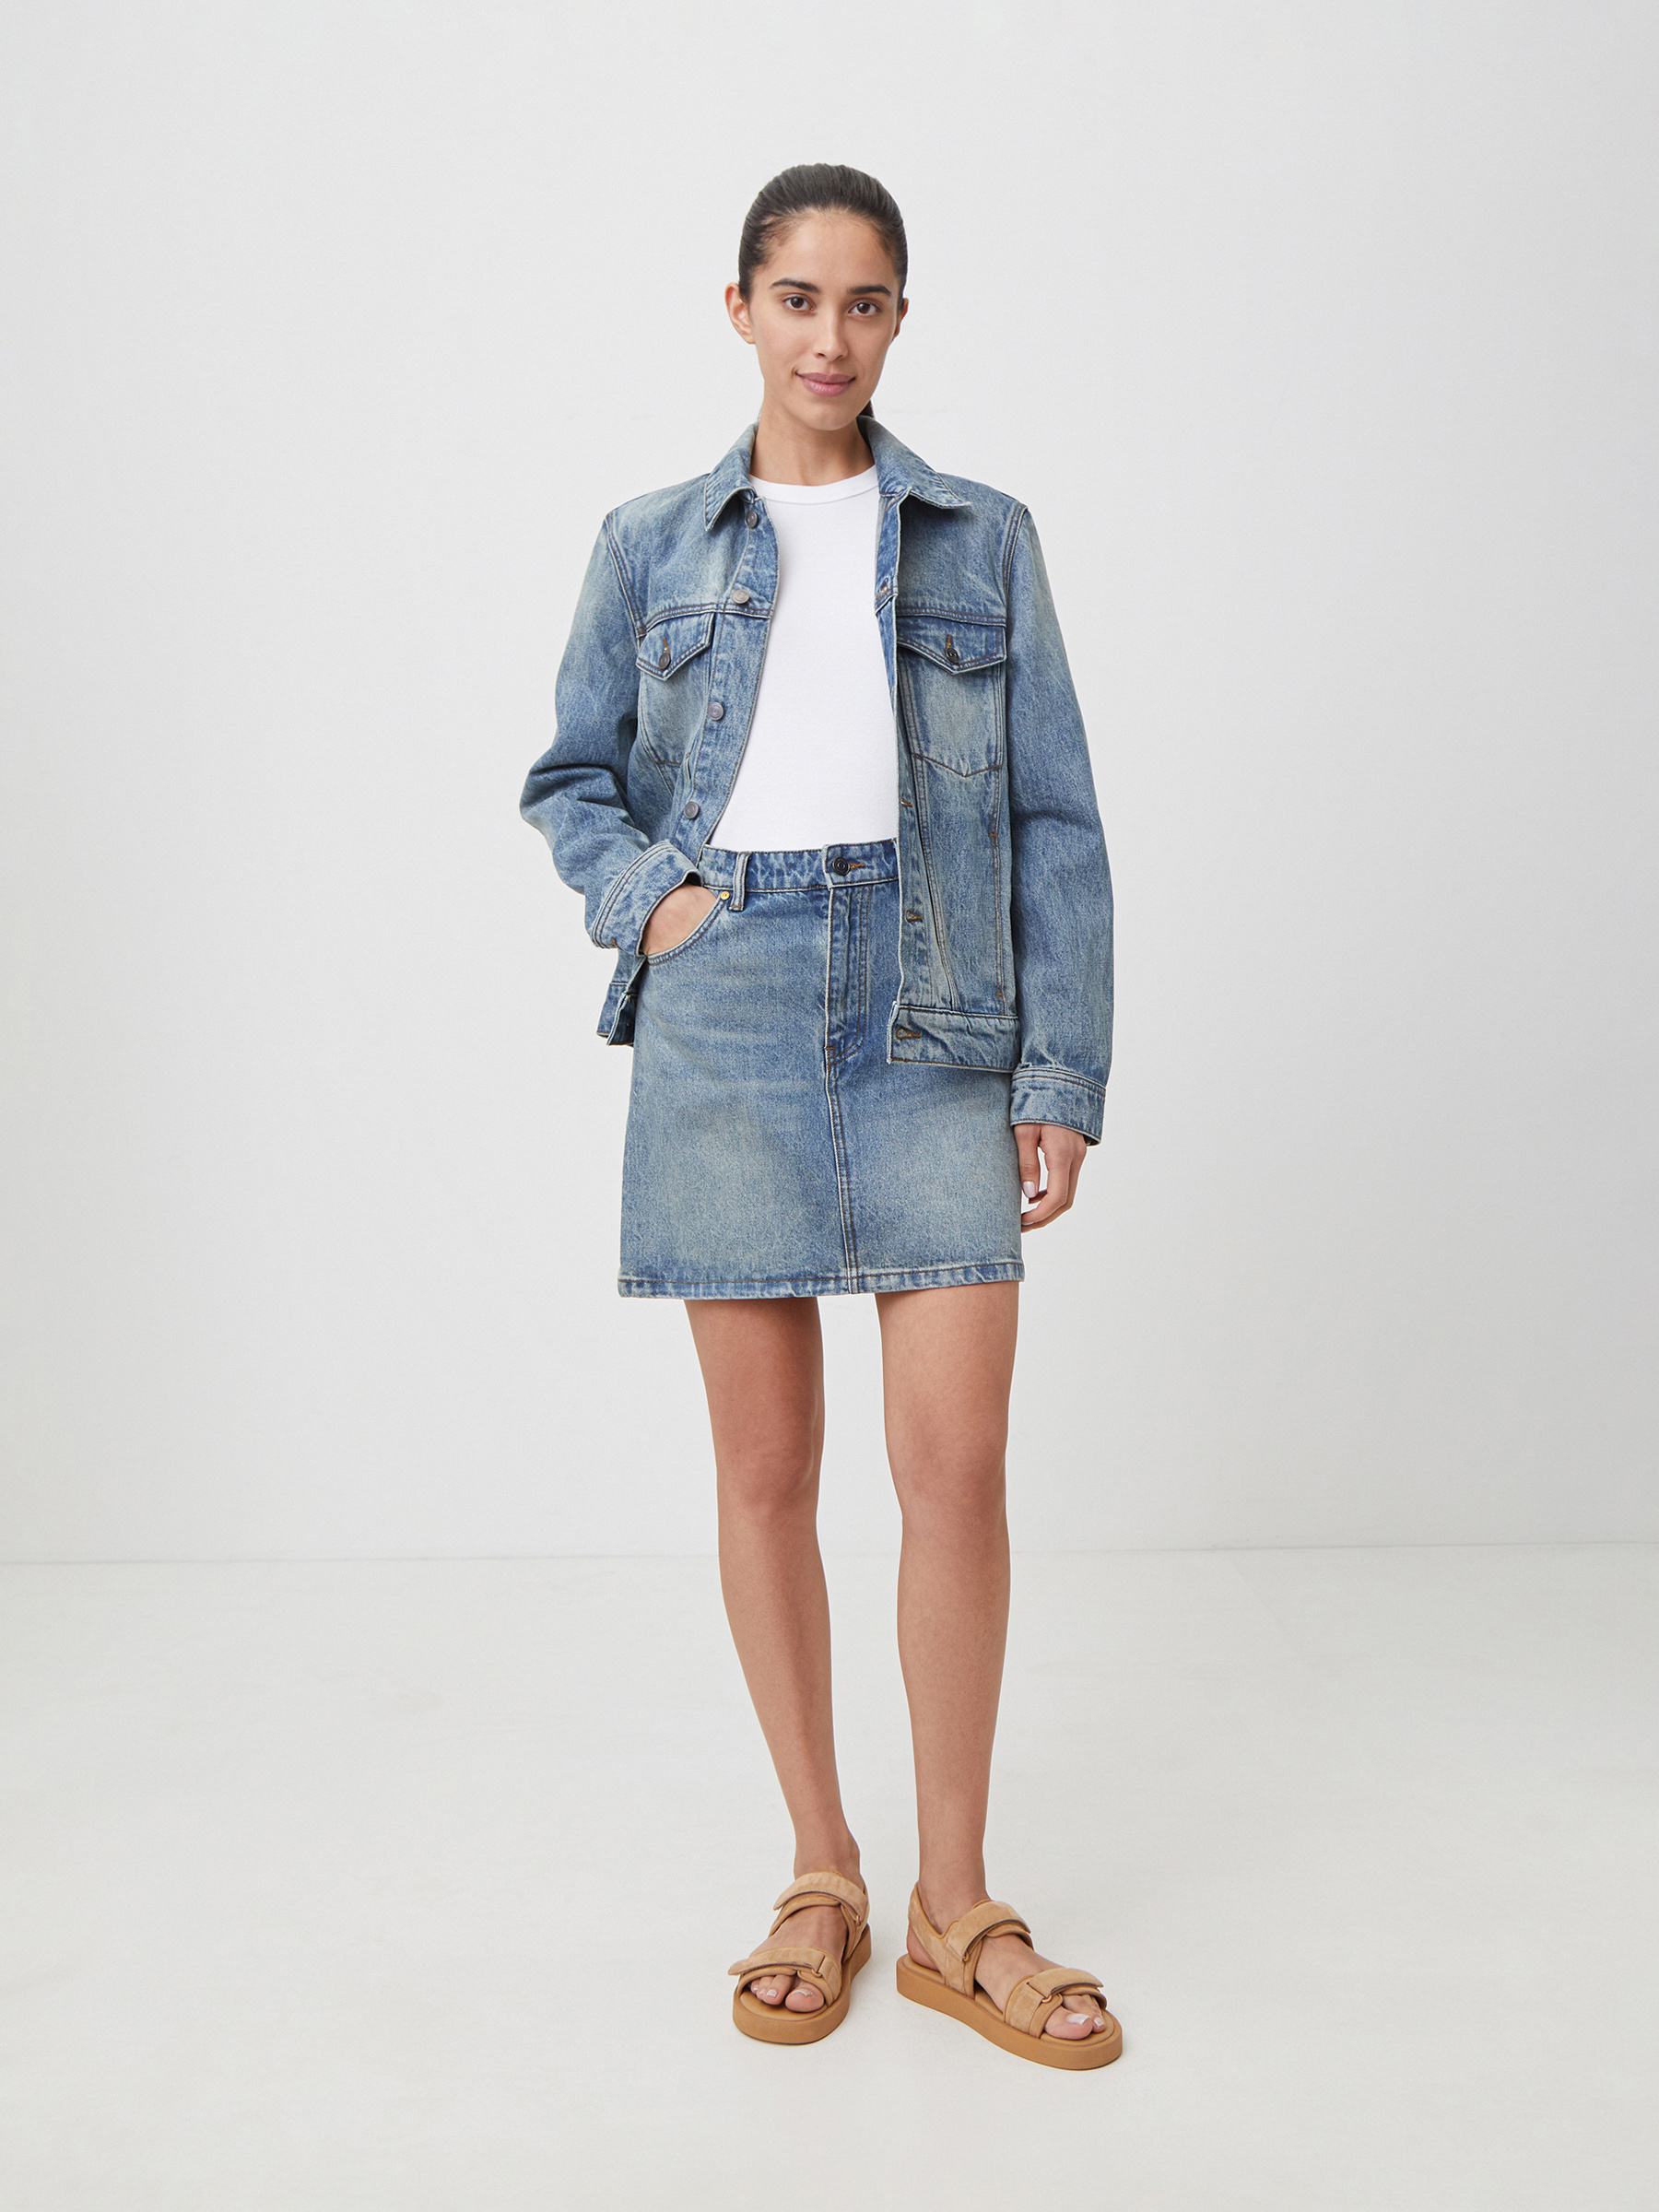 Юбка джинсовая мини 12 STOREEZ 12⠀storeez джинсовая юбка миди с декоративной планкой